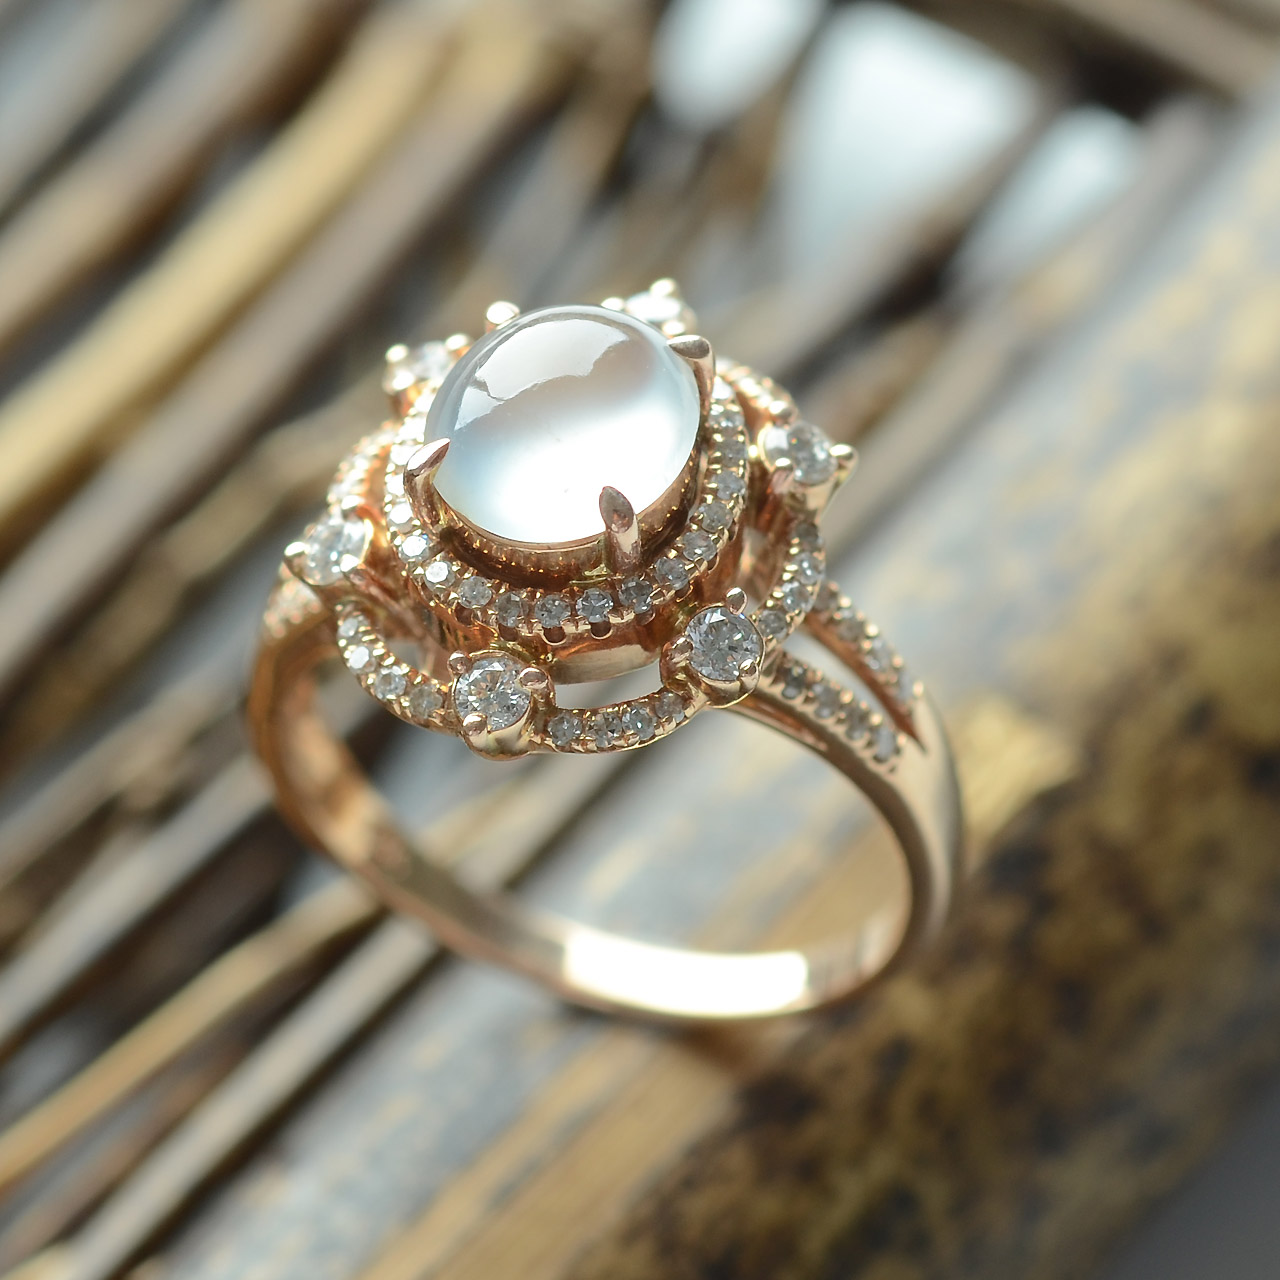 凸显女性魅力的指尖装扮 小而精的翡翠戒指欣赏